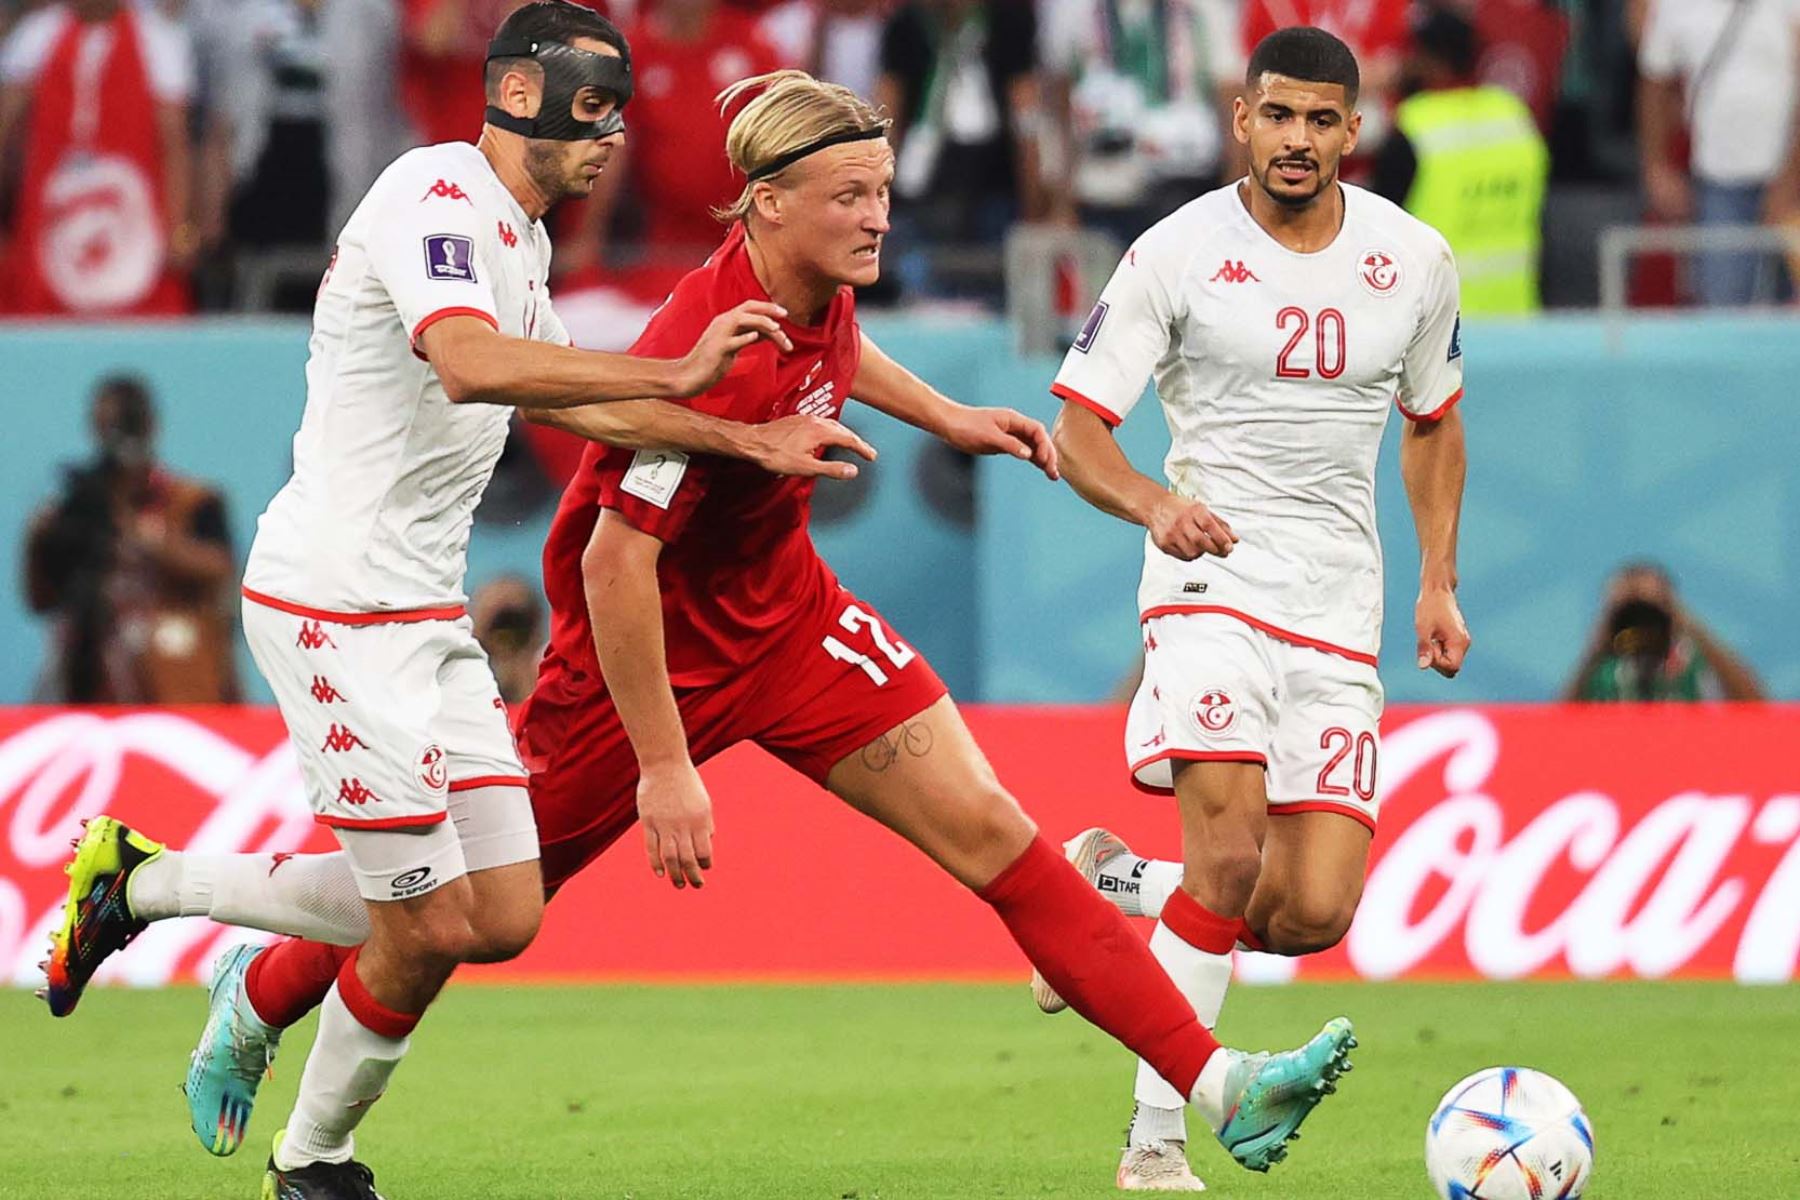 Kasper Dolberg de Dinamarca en acción contra los jugadores tunecinos Ellyes Skhiri  y Mohamed Draeger (R) durante el partido de fútbol del grupo D de la Copa Mundial de la FIFA 2022 entre Dinamarca y Túnez en Estadio Education City en Doha, Catar. Foto: EFE